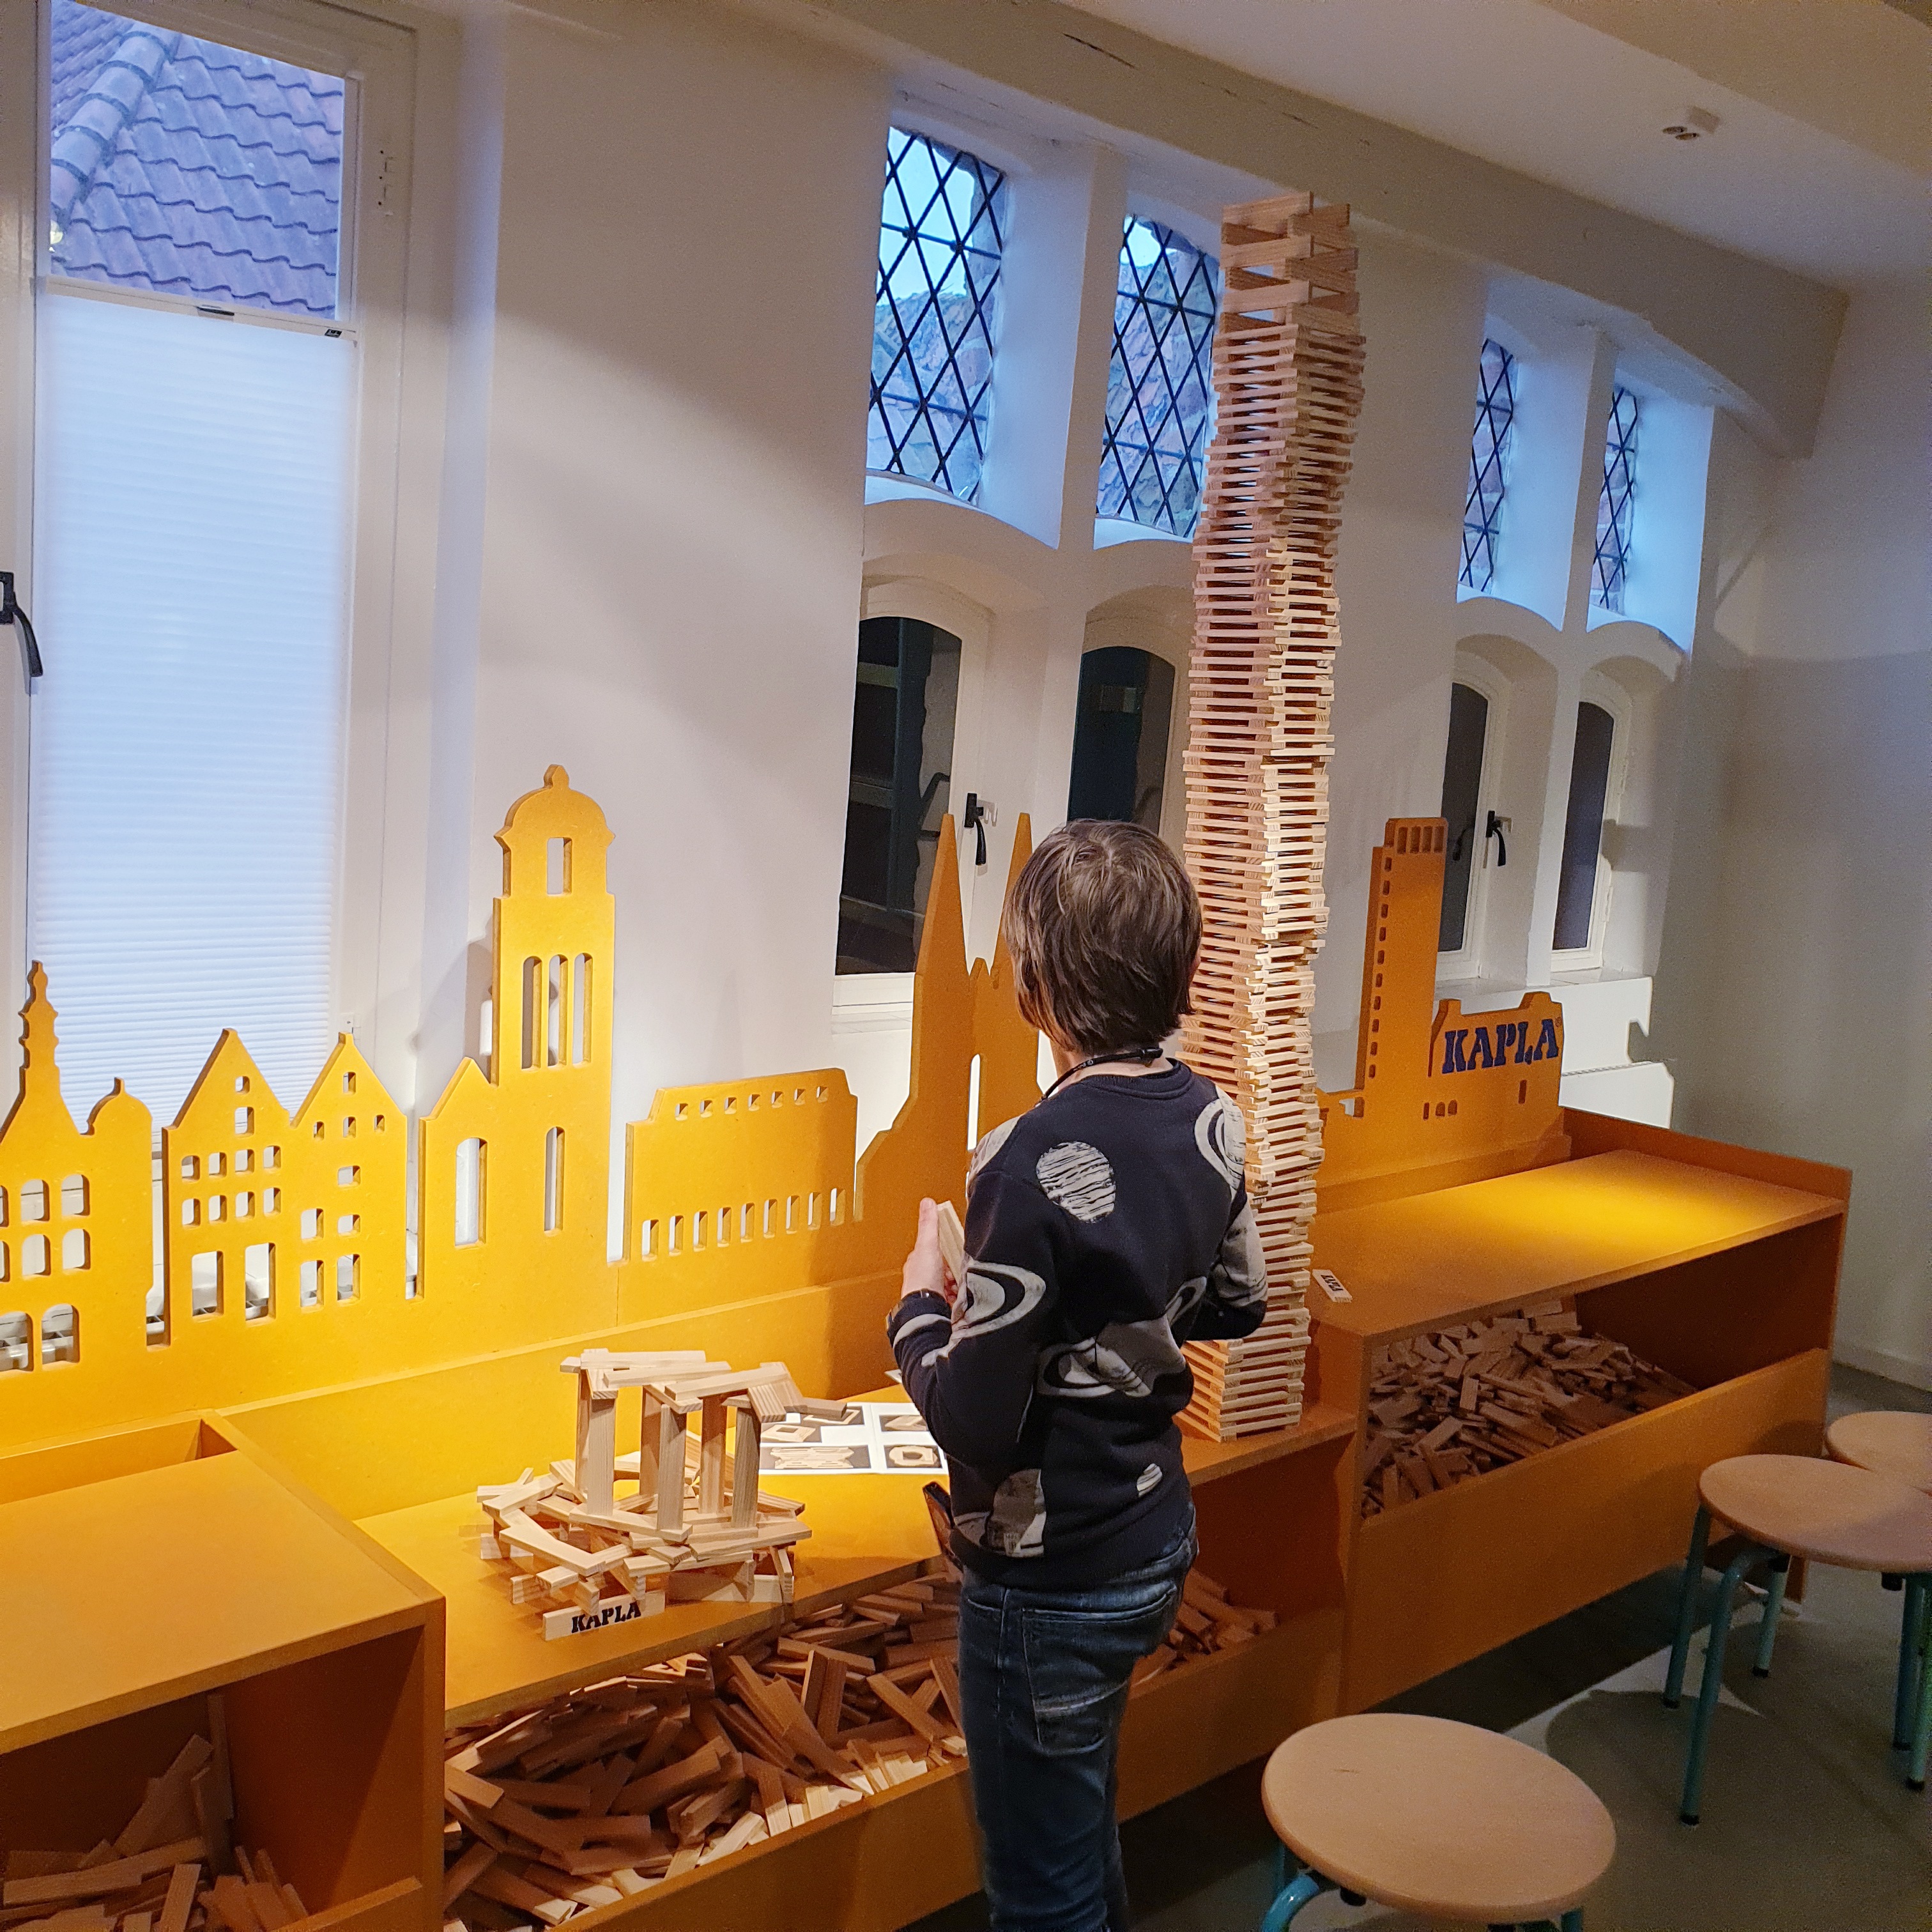 Museum met kinderen: 101x leukste kindermuseum van Nederland. Zoals het Speelgoedmuseum in Deventer: uitje met speelgoed van vroeger en nu. Voor de kinderen is het heel leuk om te zien waar kinderen vroeger mee speelgoed. Maar de meeste tijd brachten we door in de delen van het Speelgoedmuseum waar je lekker zelf kunt spelen. Zoals de grote ruimte met bouwspeelgoed, waaronder KAPLA.